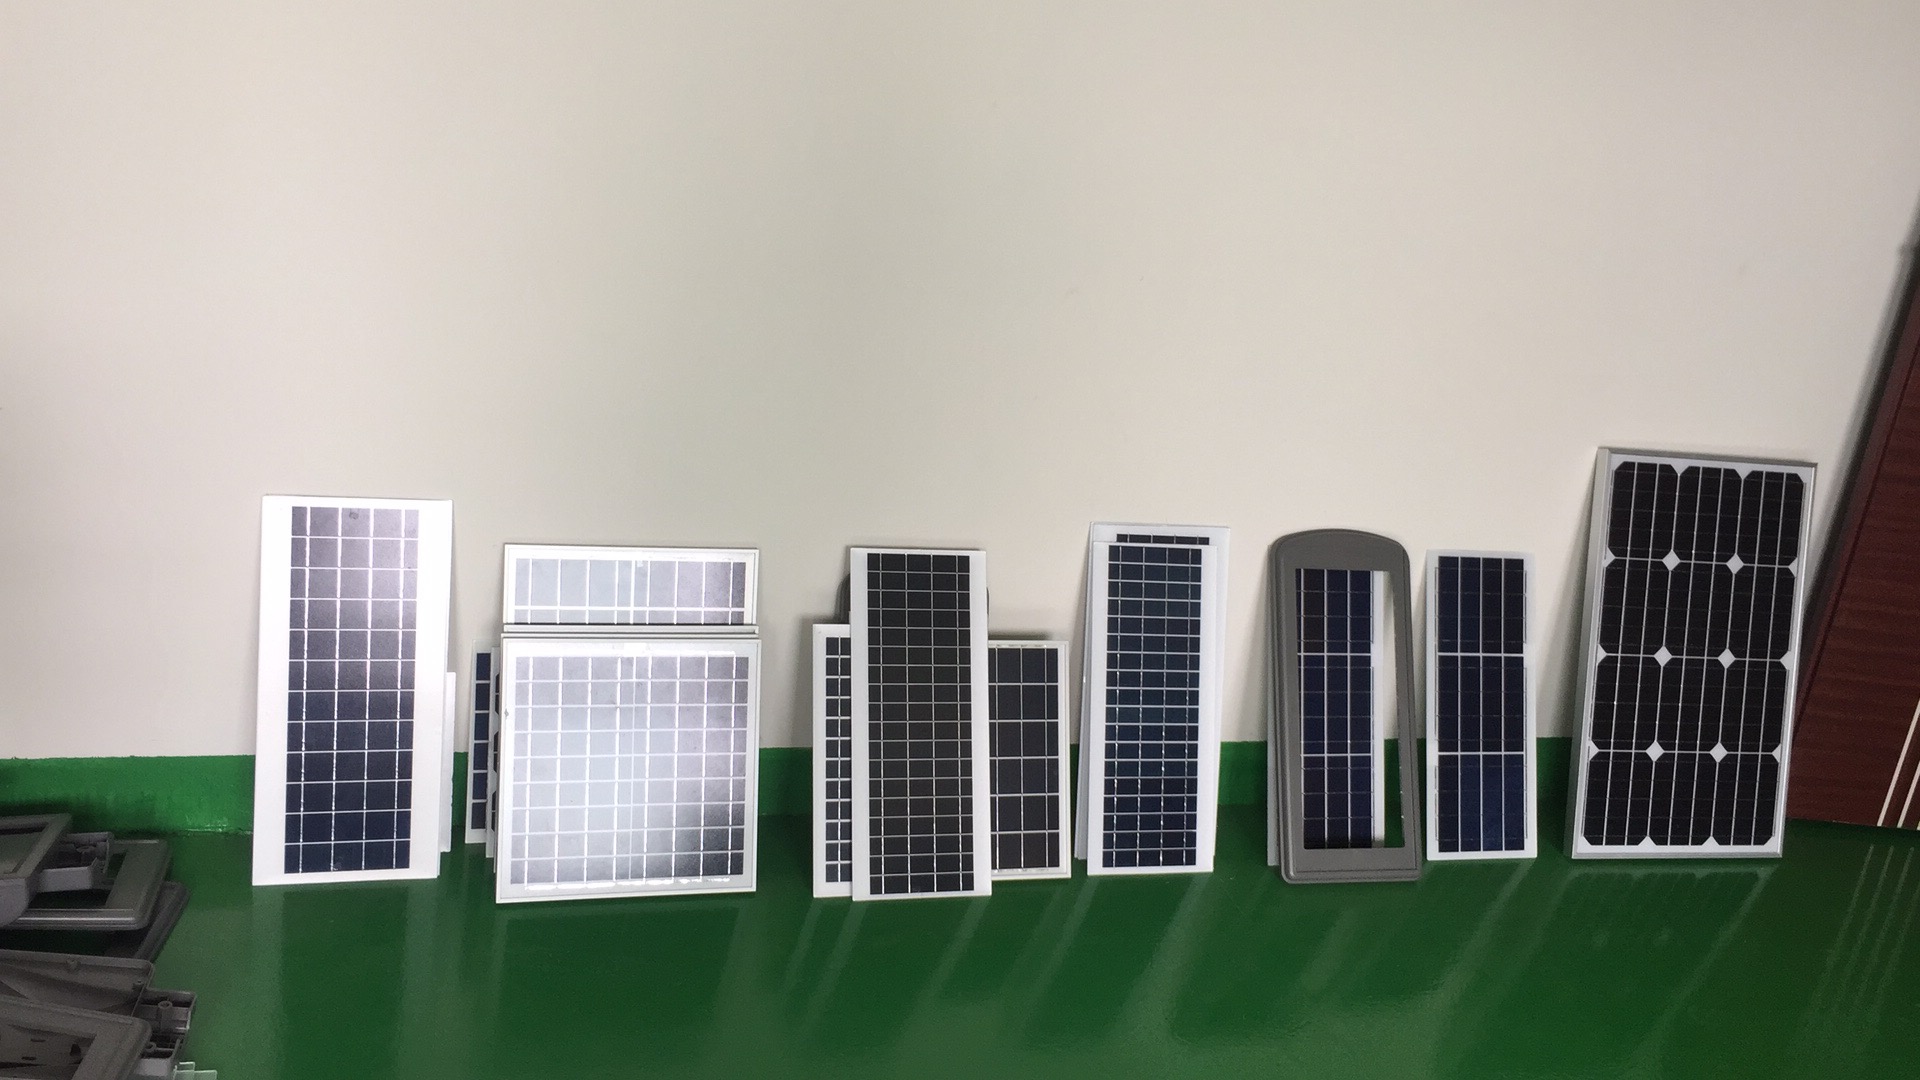 太阳能电池板厂家批发